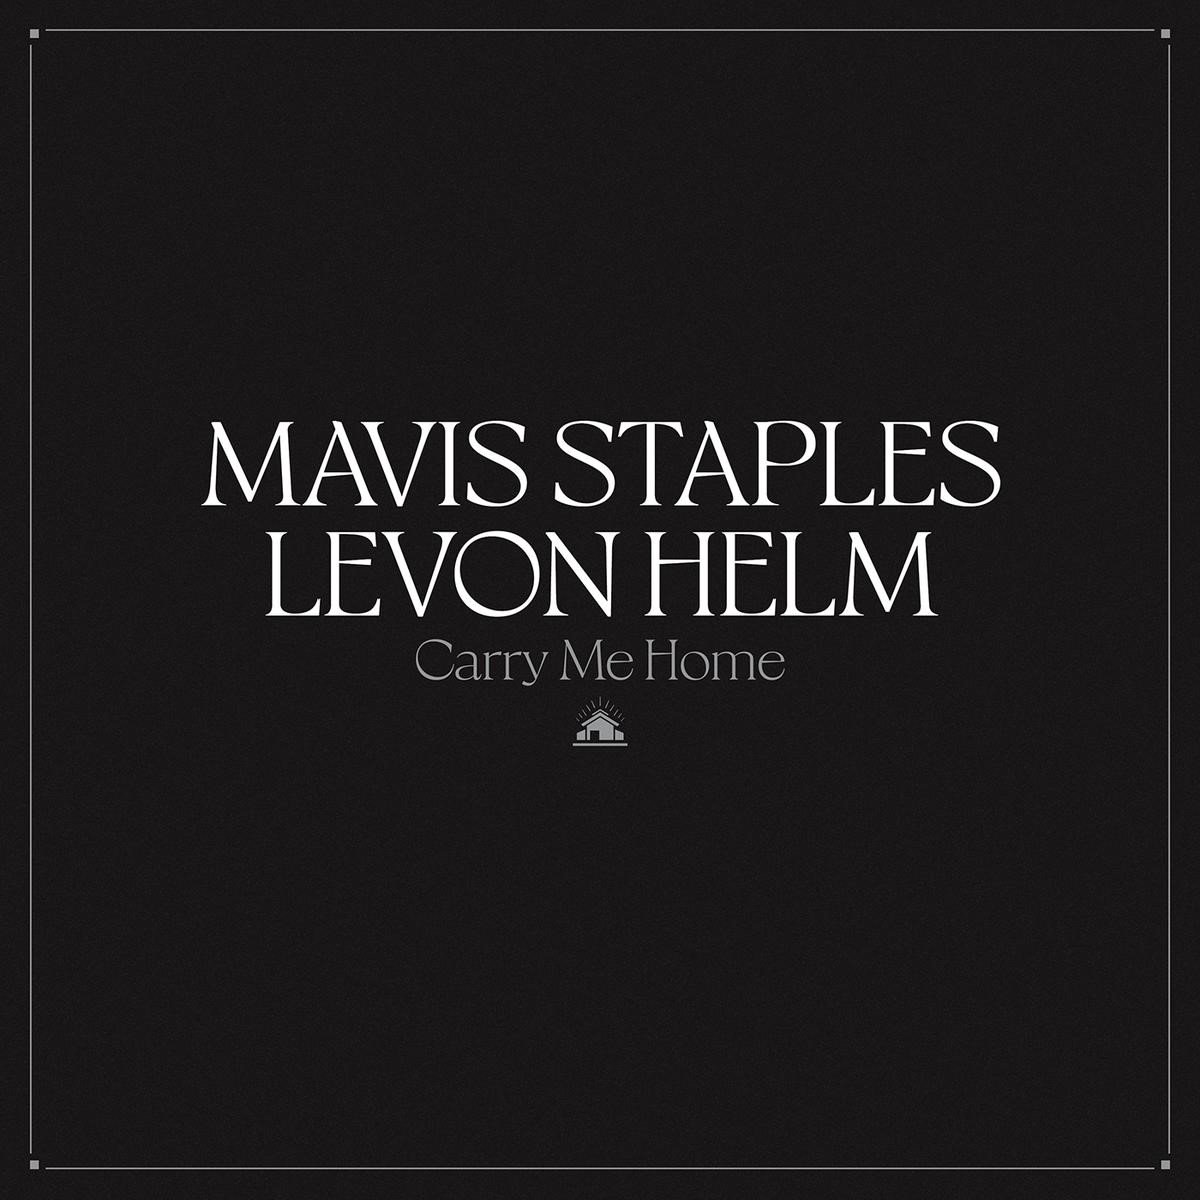 Mavis Staples & Levon Helm - Carry Me Home (CD) - Mavis Staples & Levon Helm